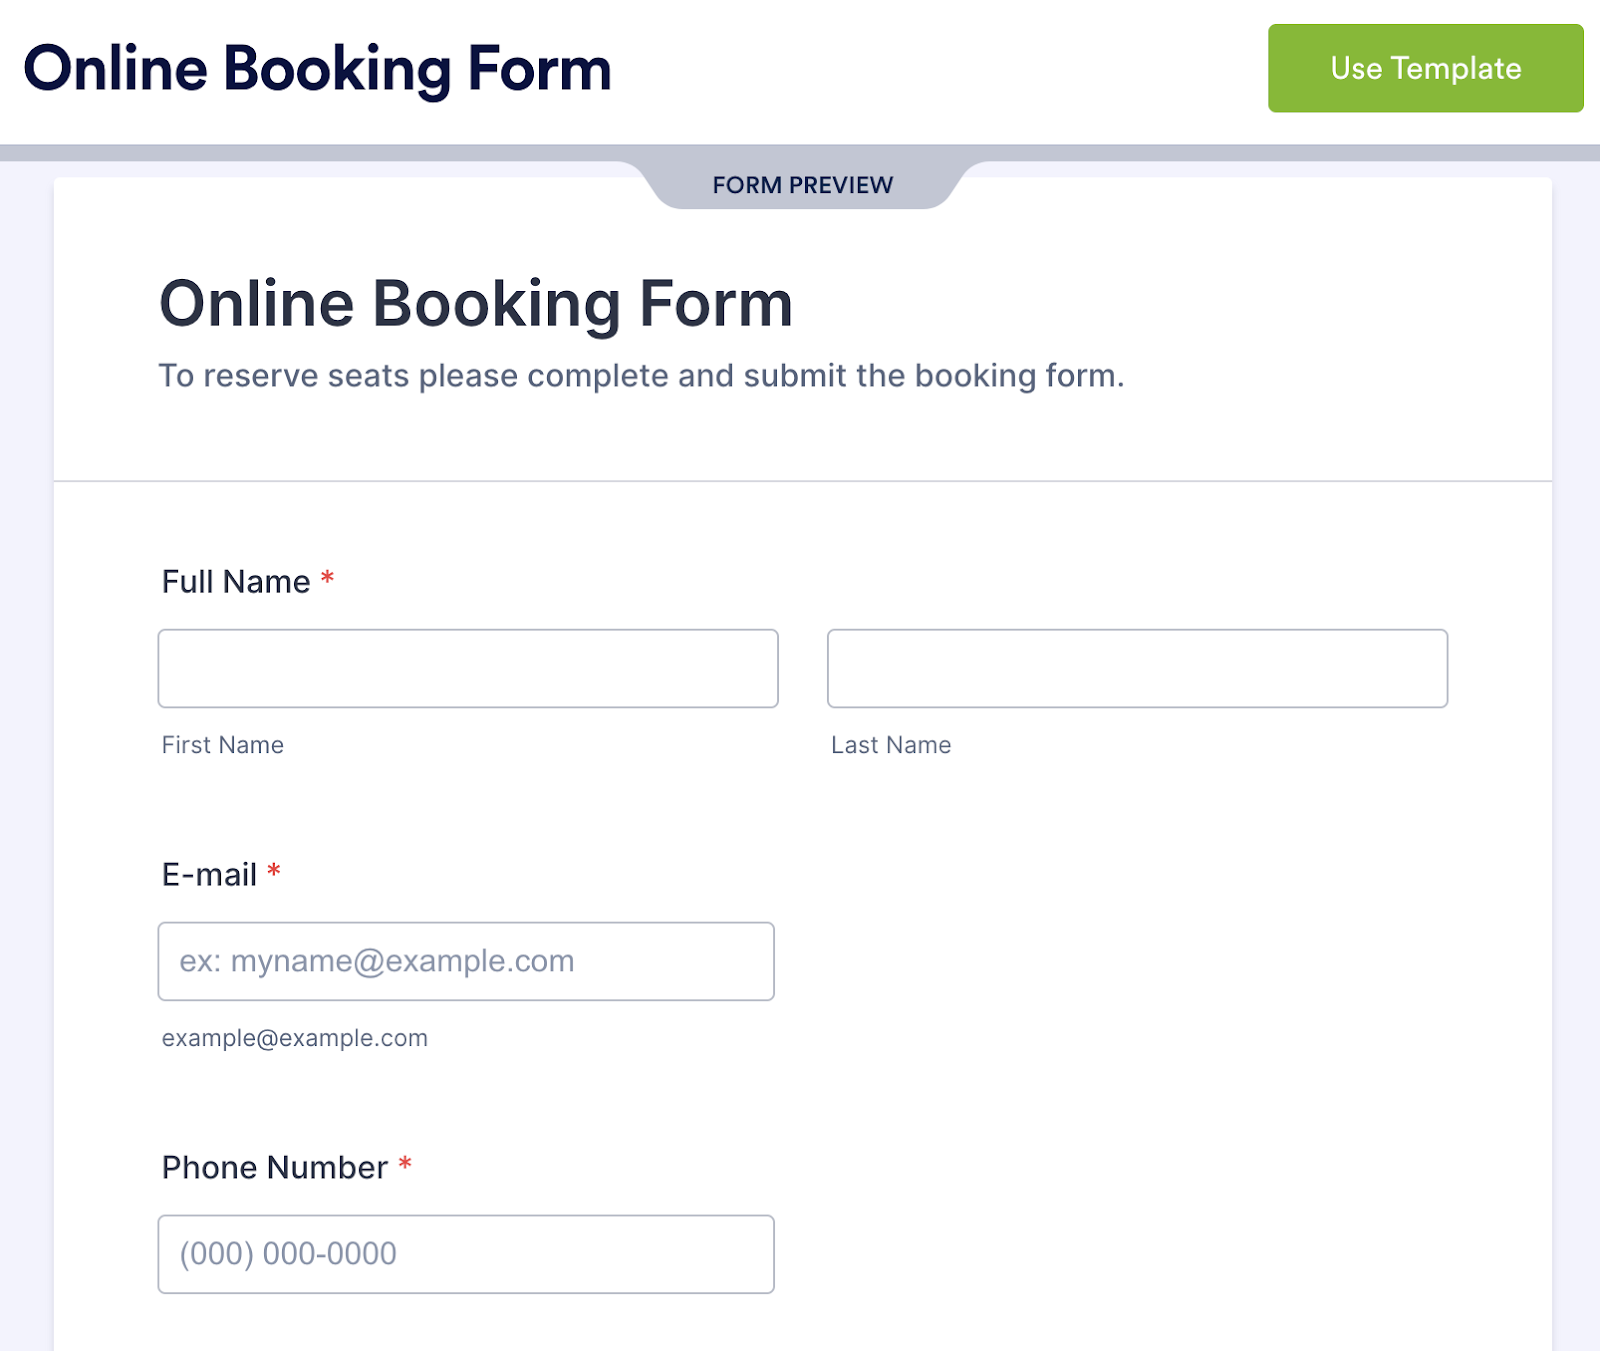 Jotform online booking form